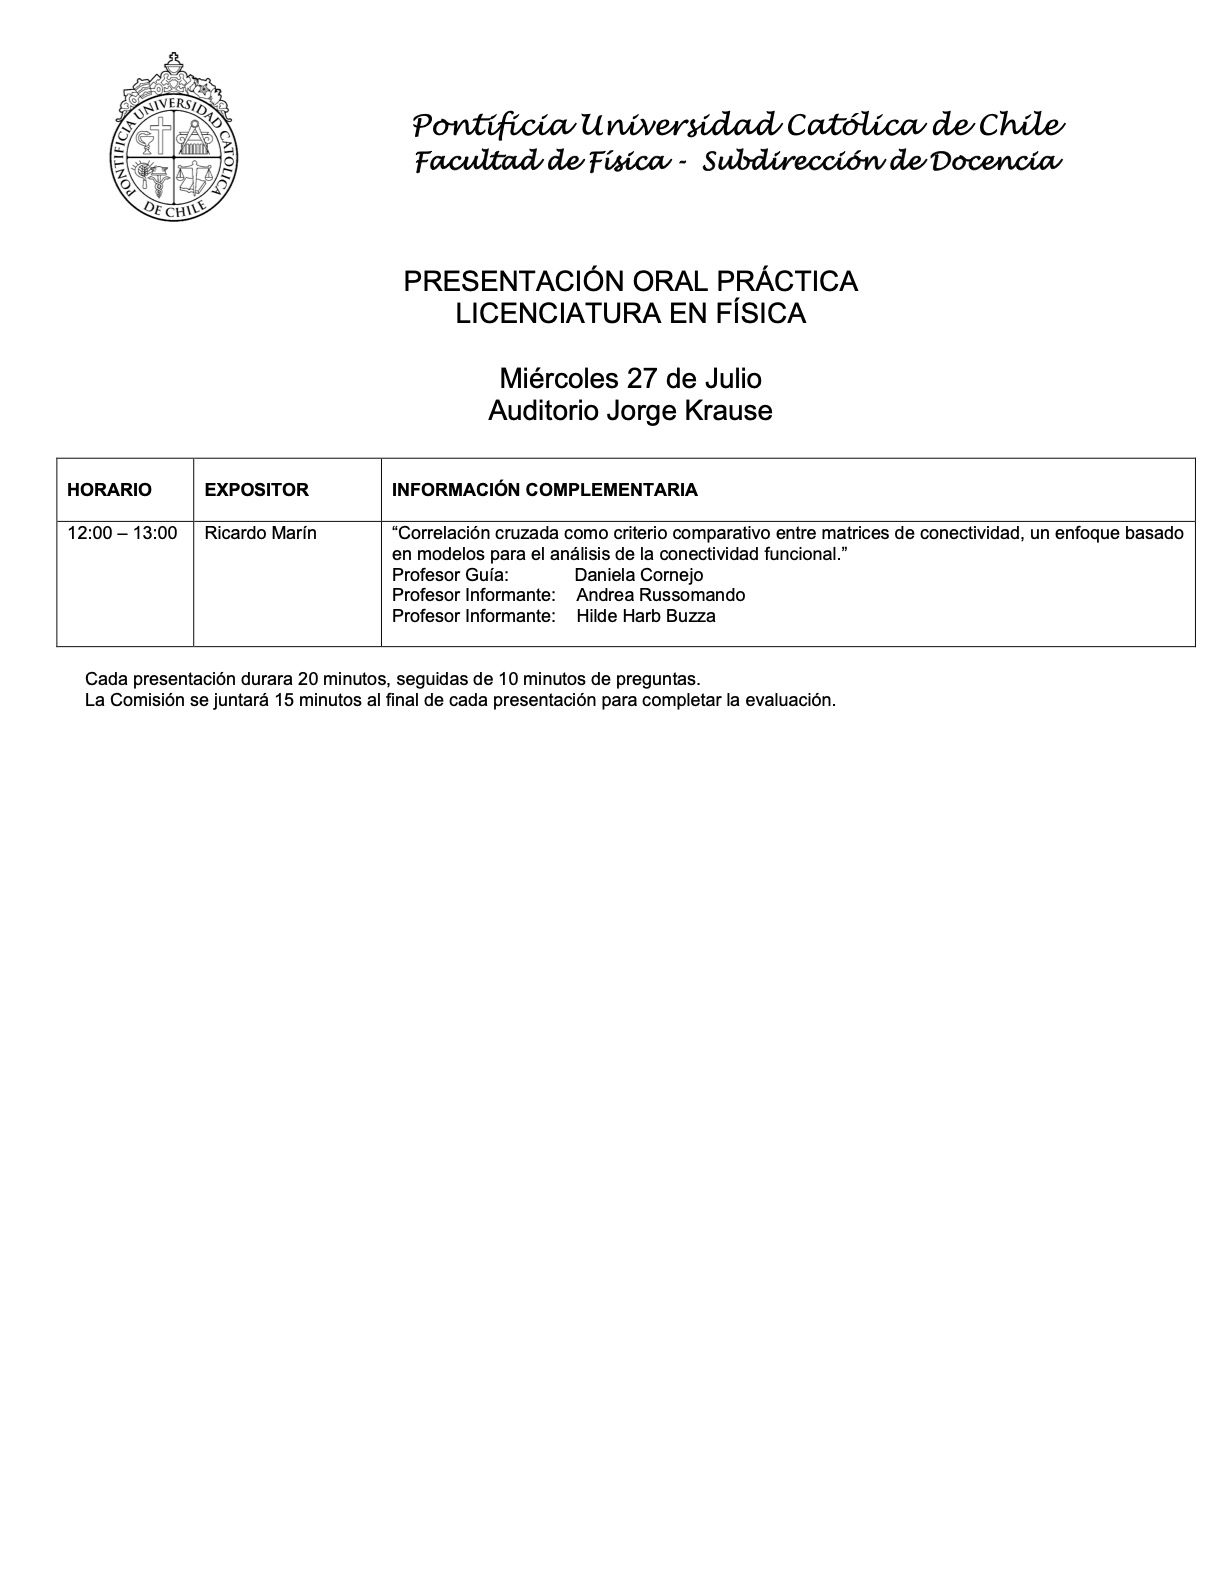 Presentación oral práctica de Licenciatura en Física (27.07.22)